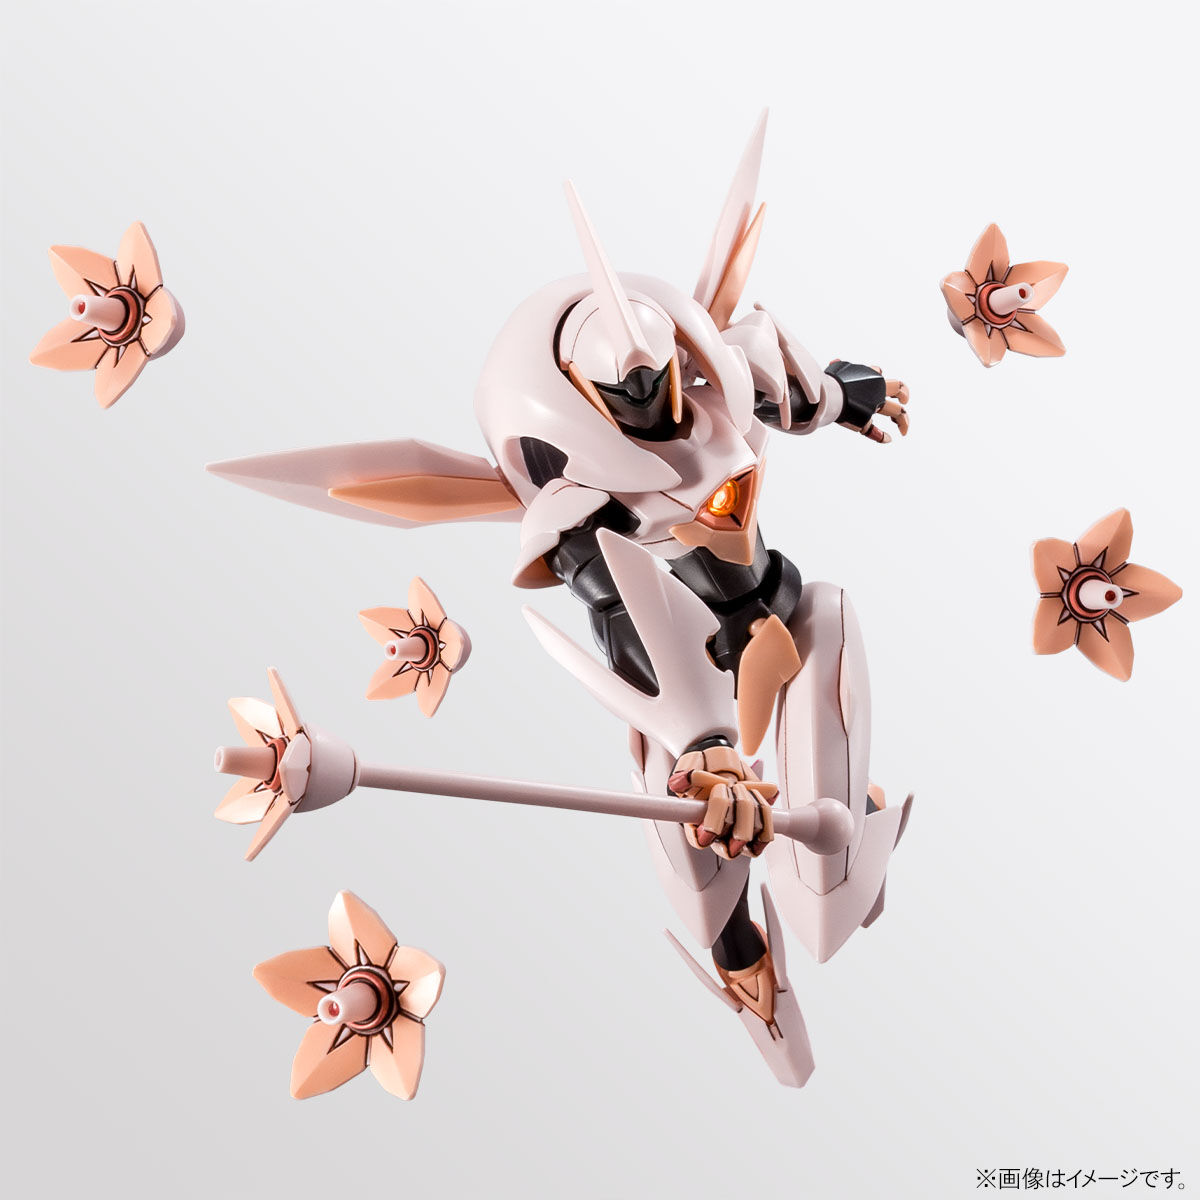 【限定販売】HG 1/144『フォーンファルシア』機動戦士ガンダムAGE プラモデル-004